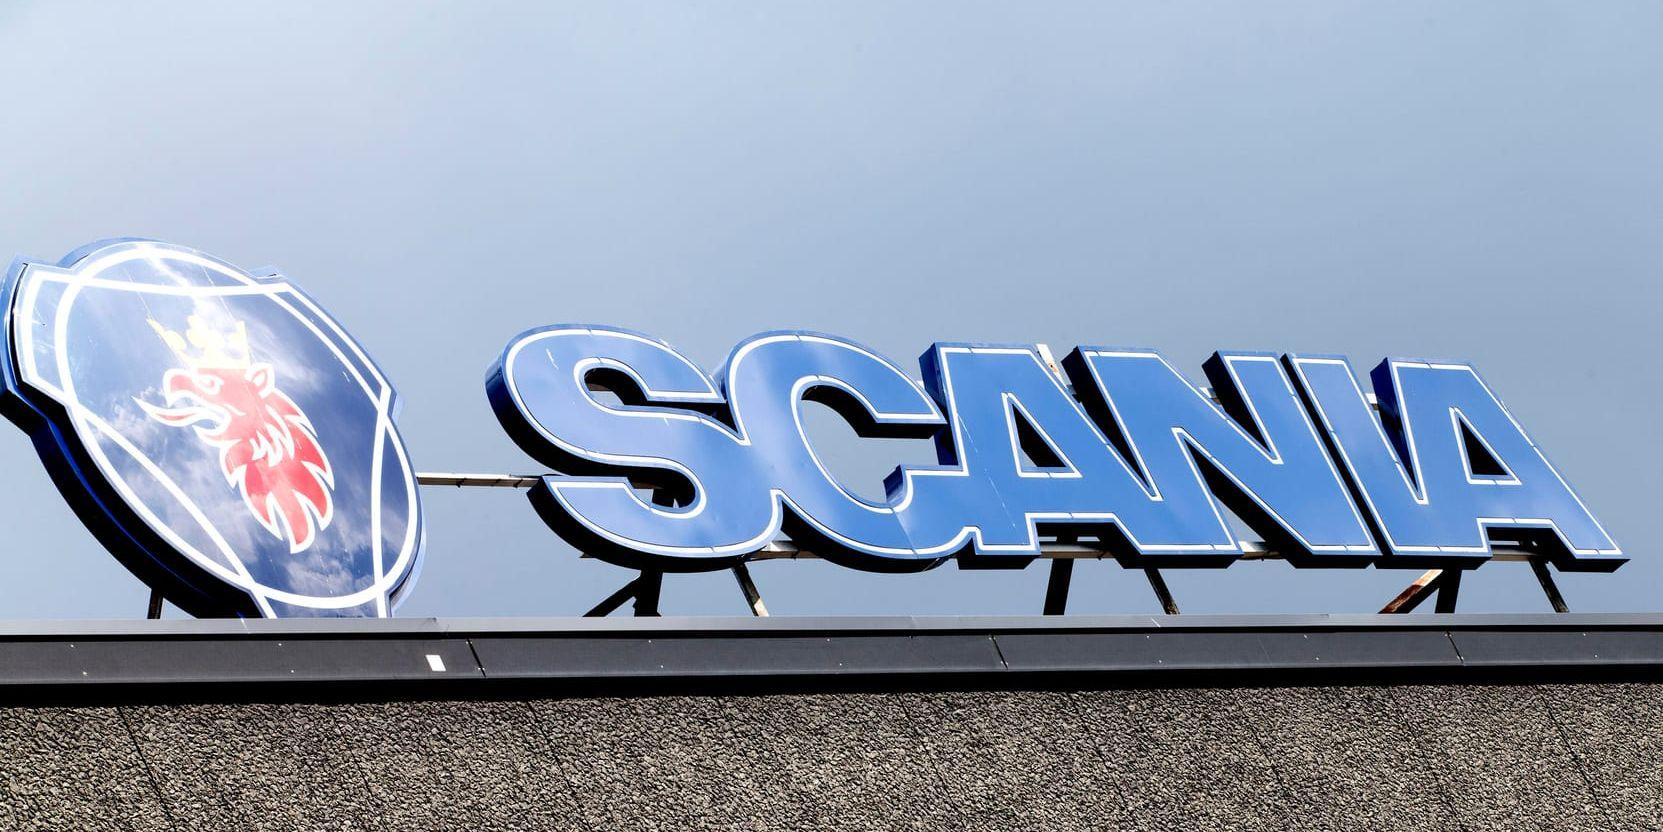 Scania satsar på samarbete kring självkörande elfordon i Kina. Arkivbild.